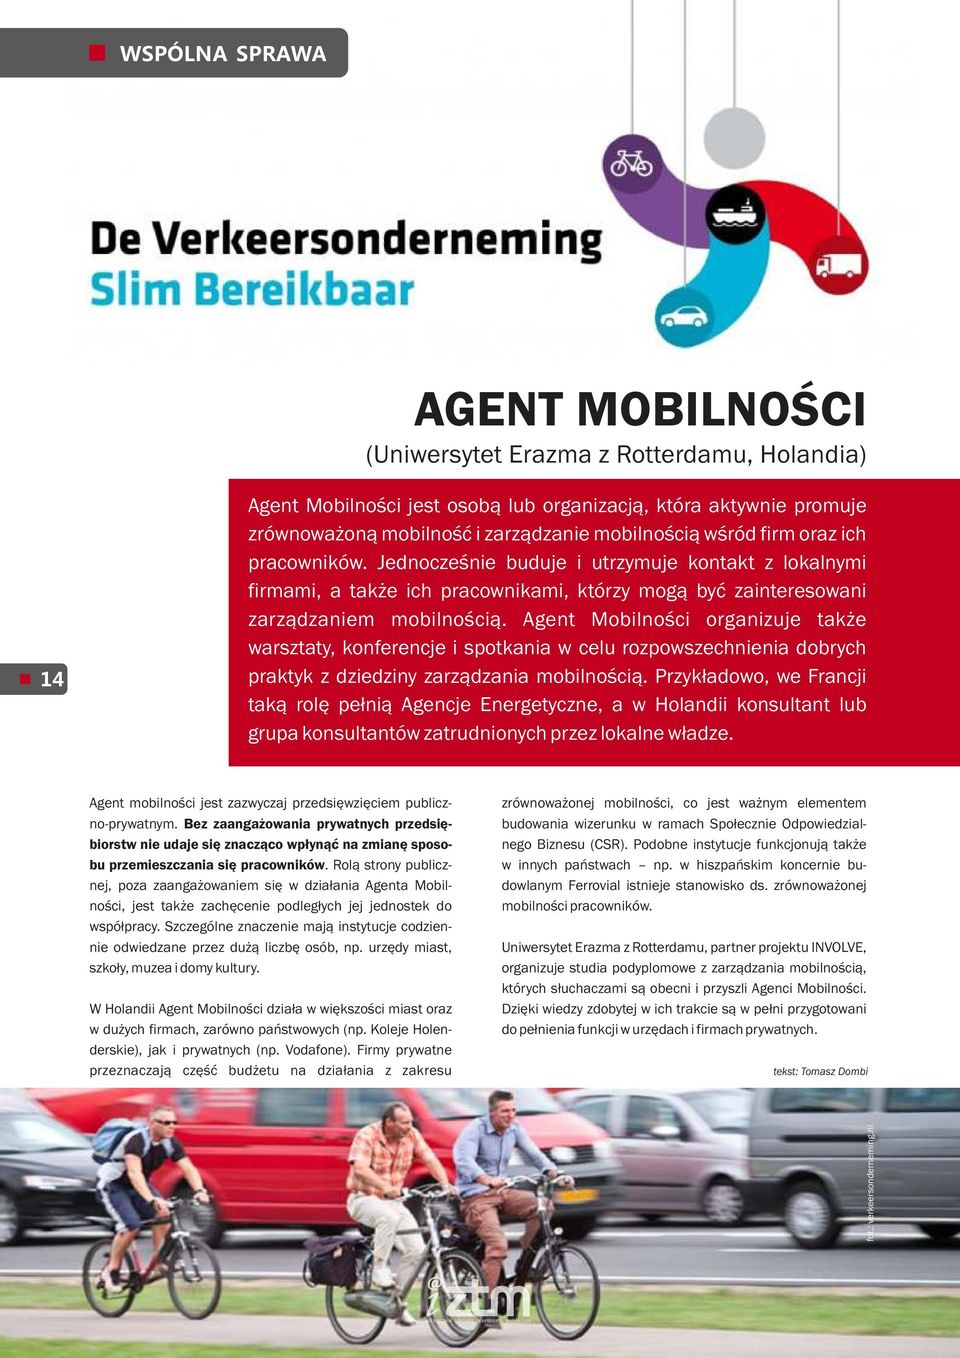 Agent Mobilności organizuje także warsztaty, konferencje i spotkania w celu rozpowszechnienia dobrych praktyk z dziedziny zarządzania mobilnością.